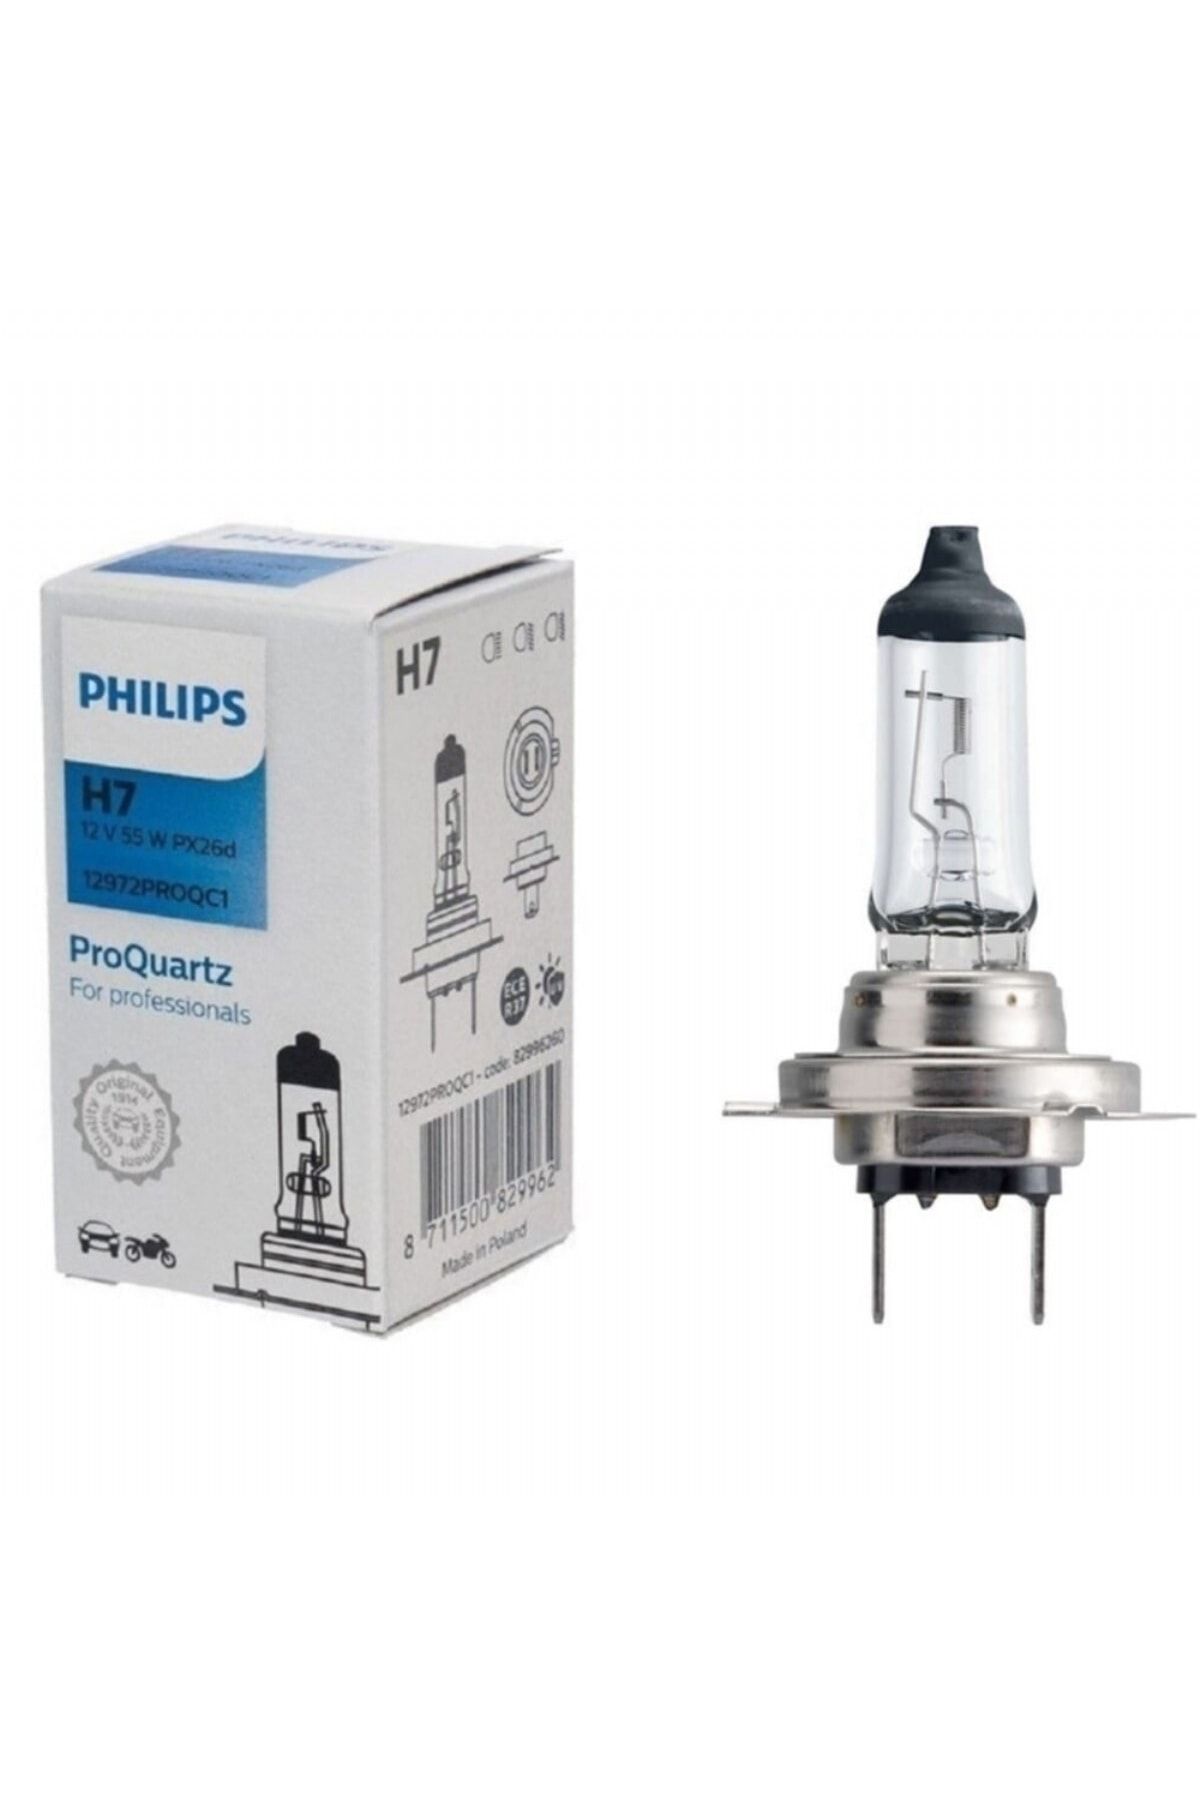 Philips 12v H7 55w Ampul Halogen Px26d 12972proqc1 (2 Li) Fiyatı, Yorumları  - Trendyol